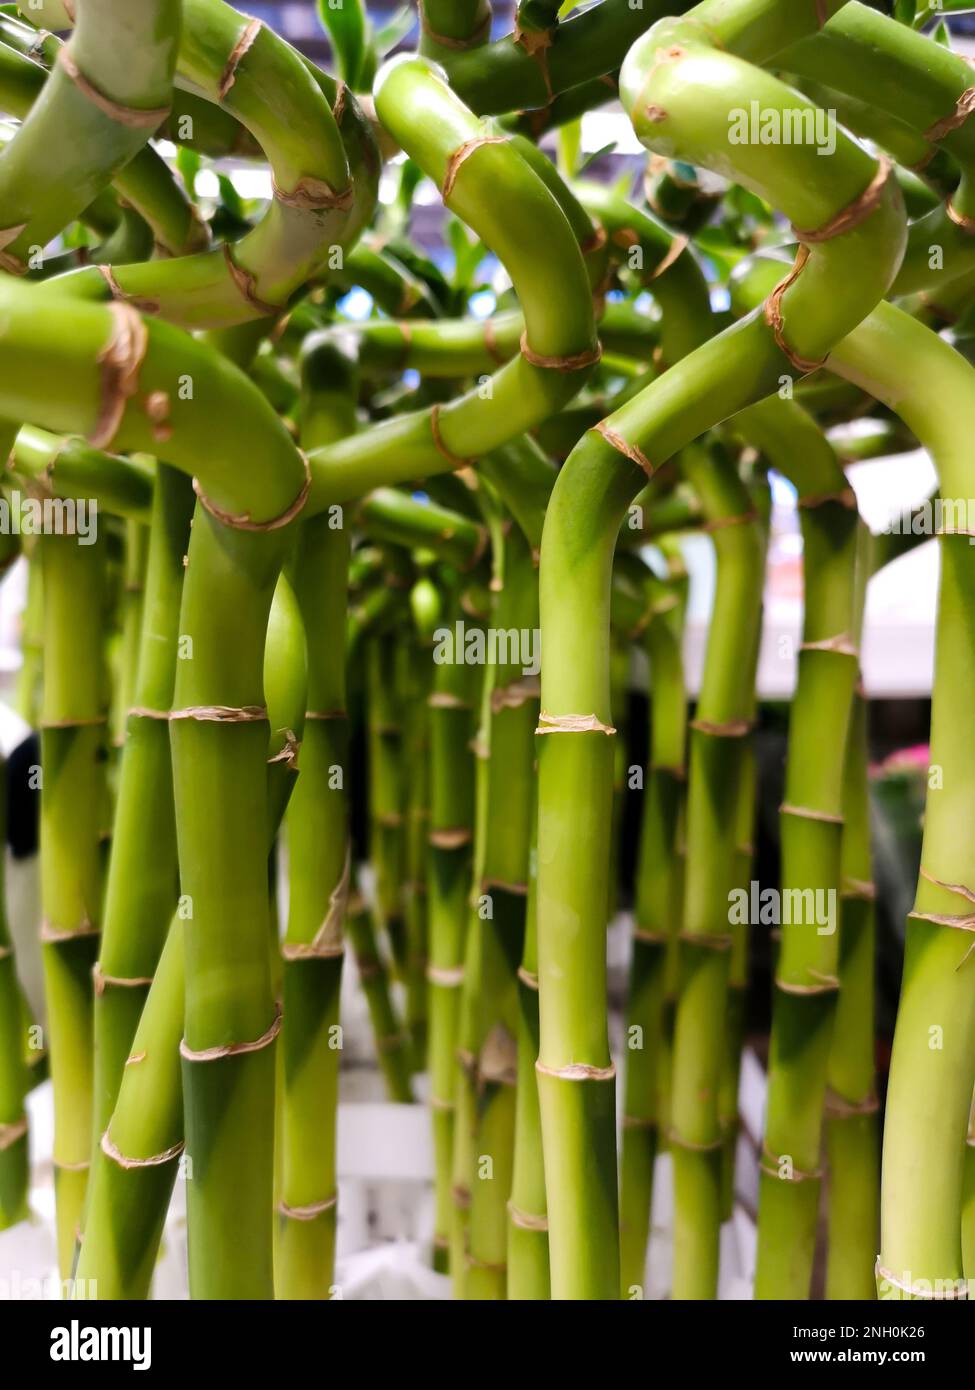 Viel grüner Glücksbambus. Zimmerpflanze mit grünem Spiralstiel. Dracaena  sanderiana, Asparagaceae, helicoide Bambussprossen, Hintergrundstruktur.  Vertikal Stockfotografie - Alamy